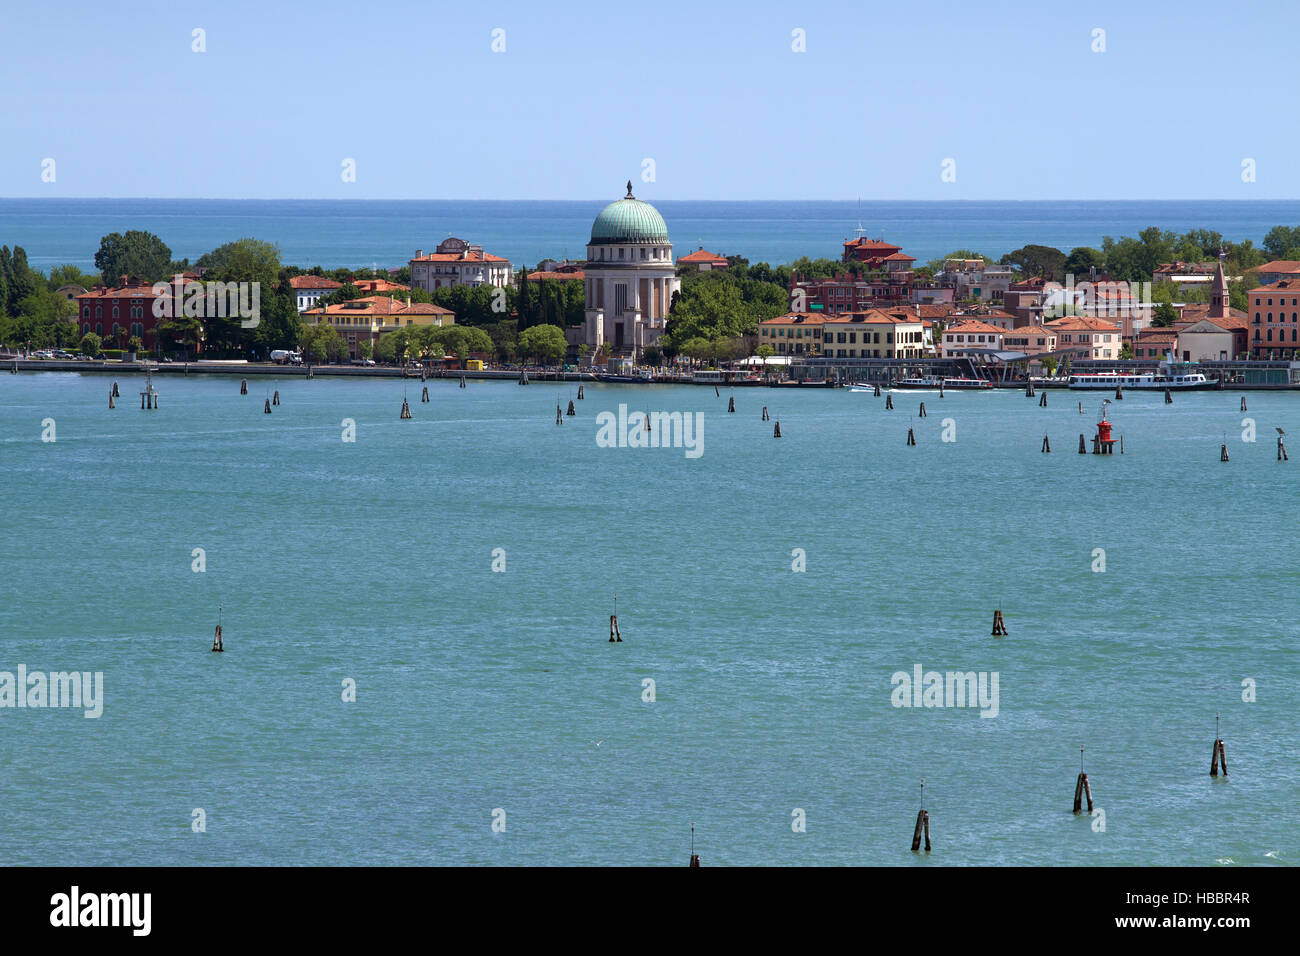 Lido 001. Venice. Italy Stock Photo